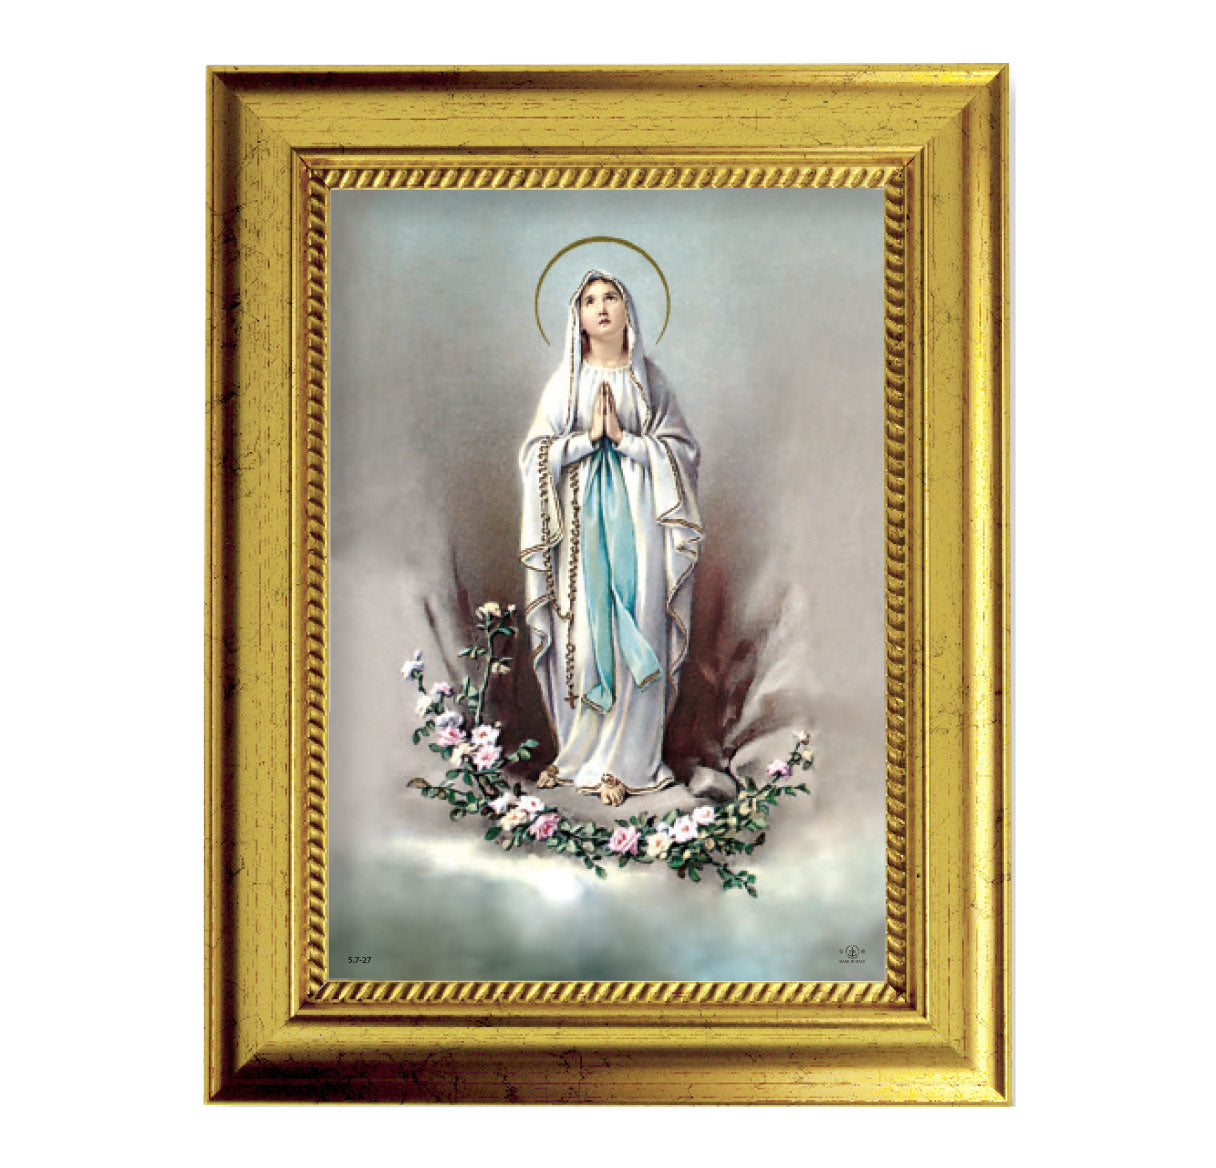 Our Lady of Lourdes Gold-Leaf Framed Art